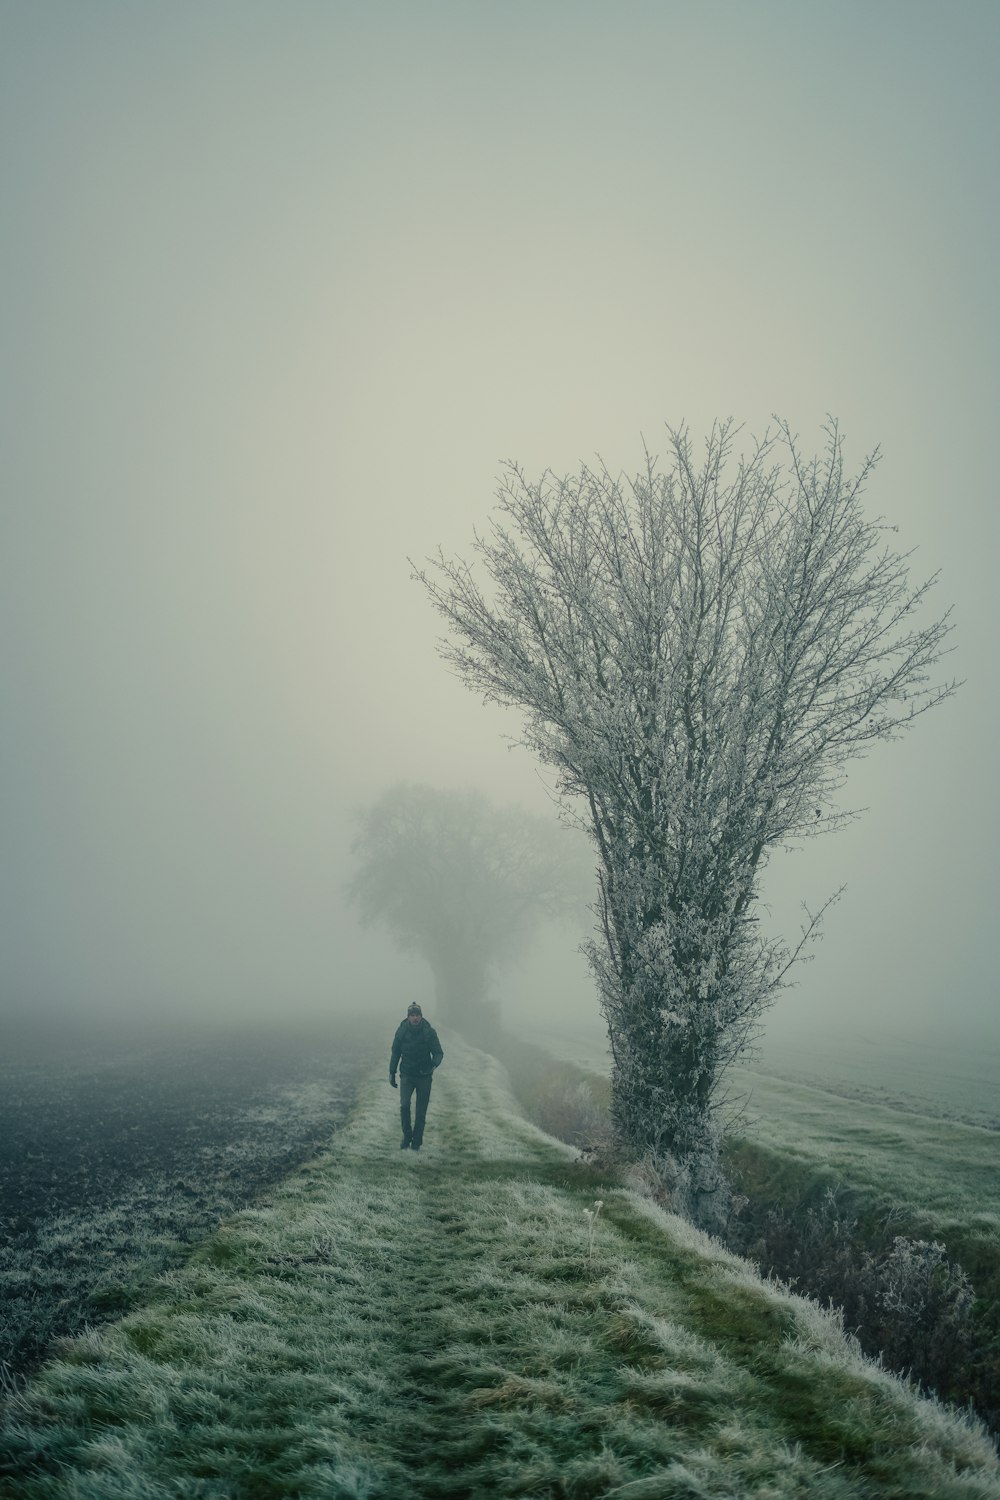 uma pessoa caminhando por uma estrada nebulosa ao lado de uma árvore